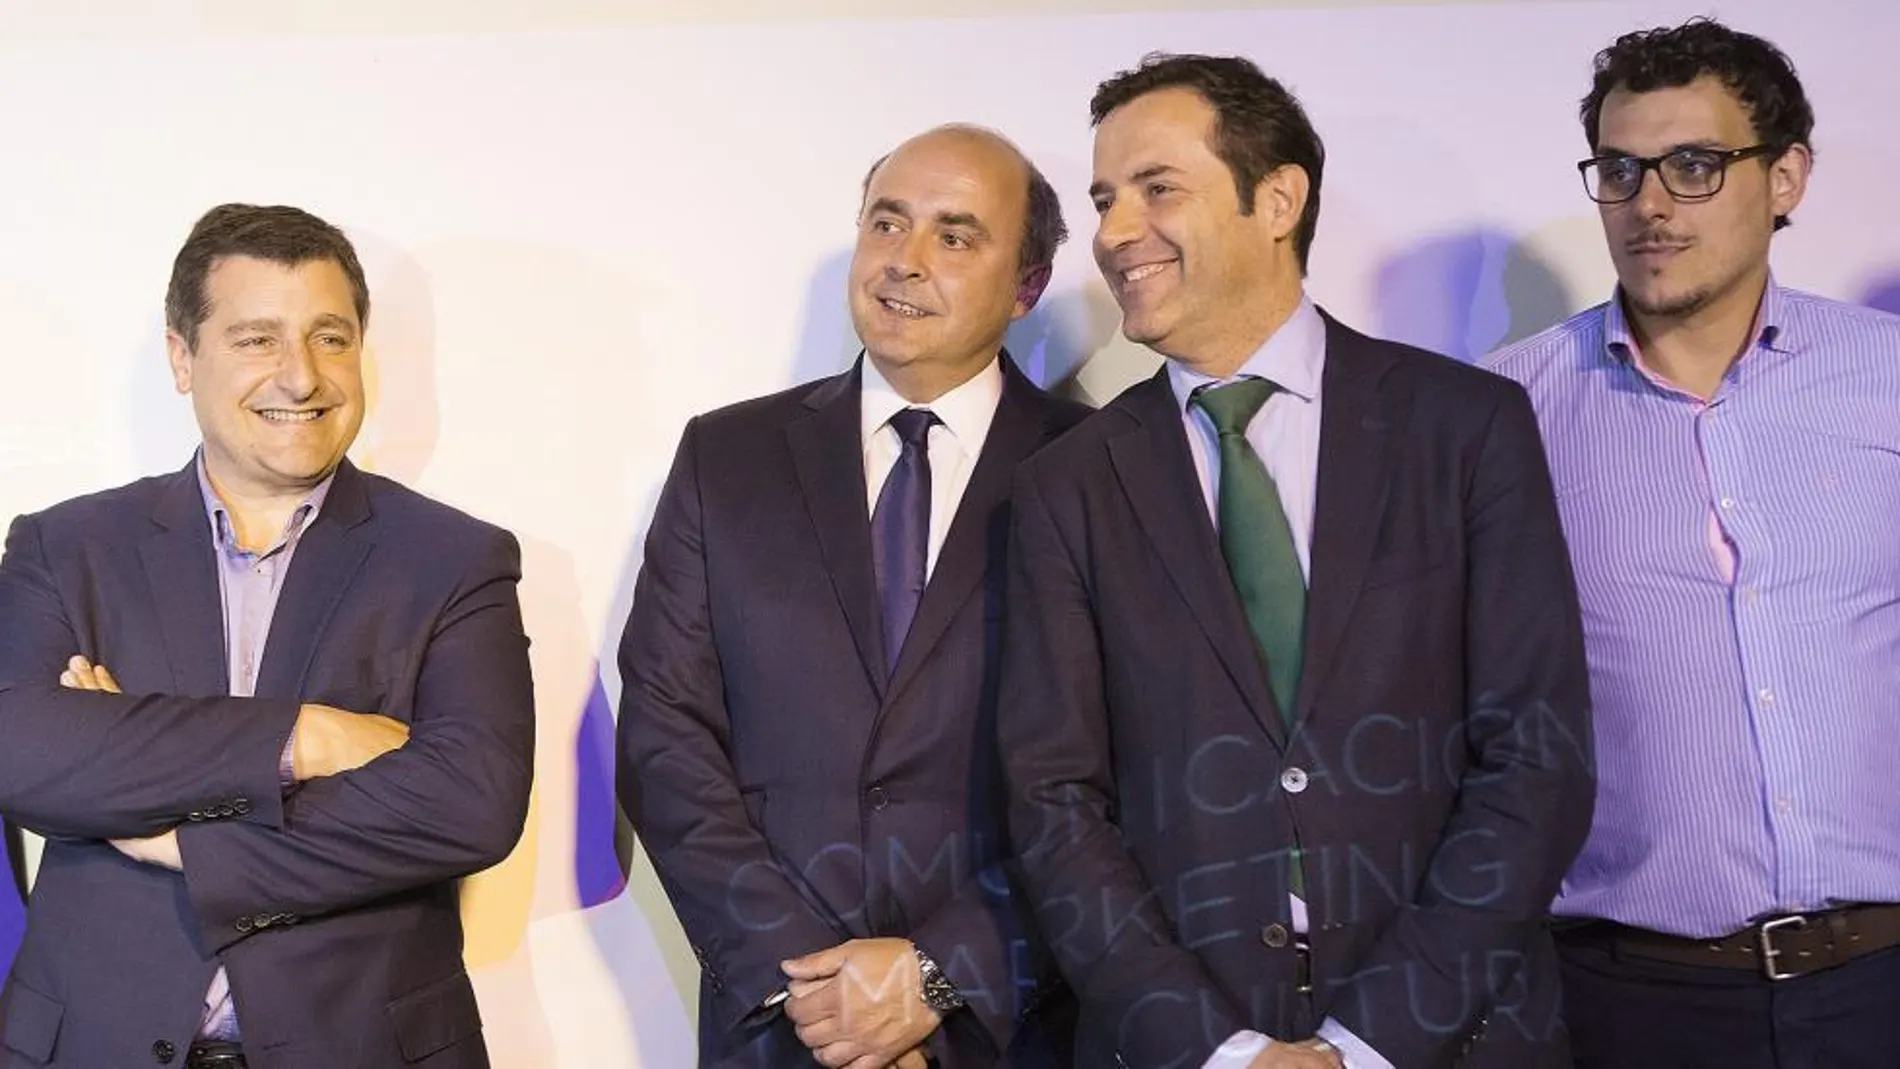 Javier Ramírez, Josep Roca, Felix Solis y Tomás del Bien asisten al simposio